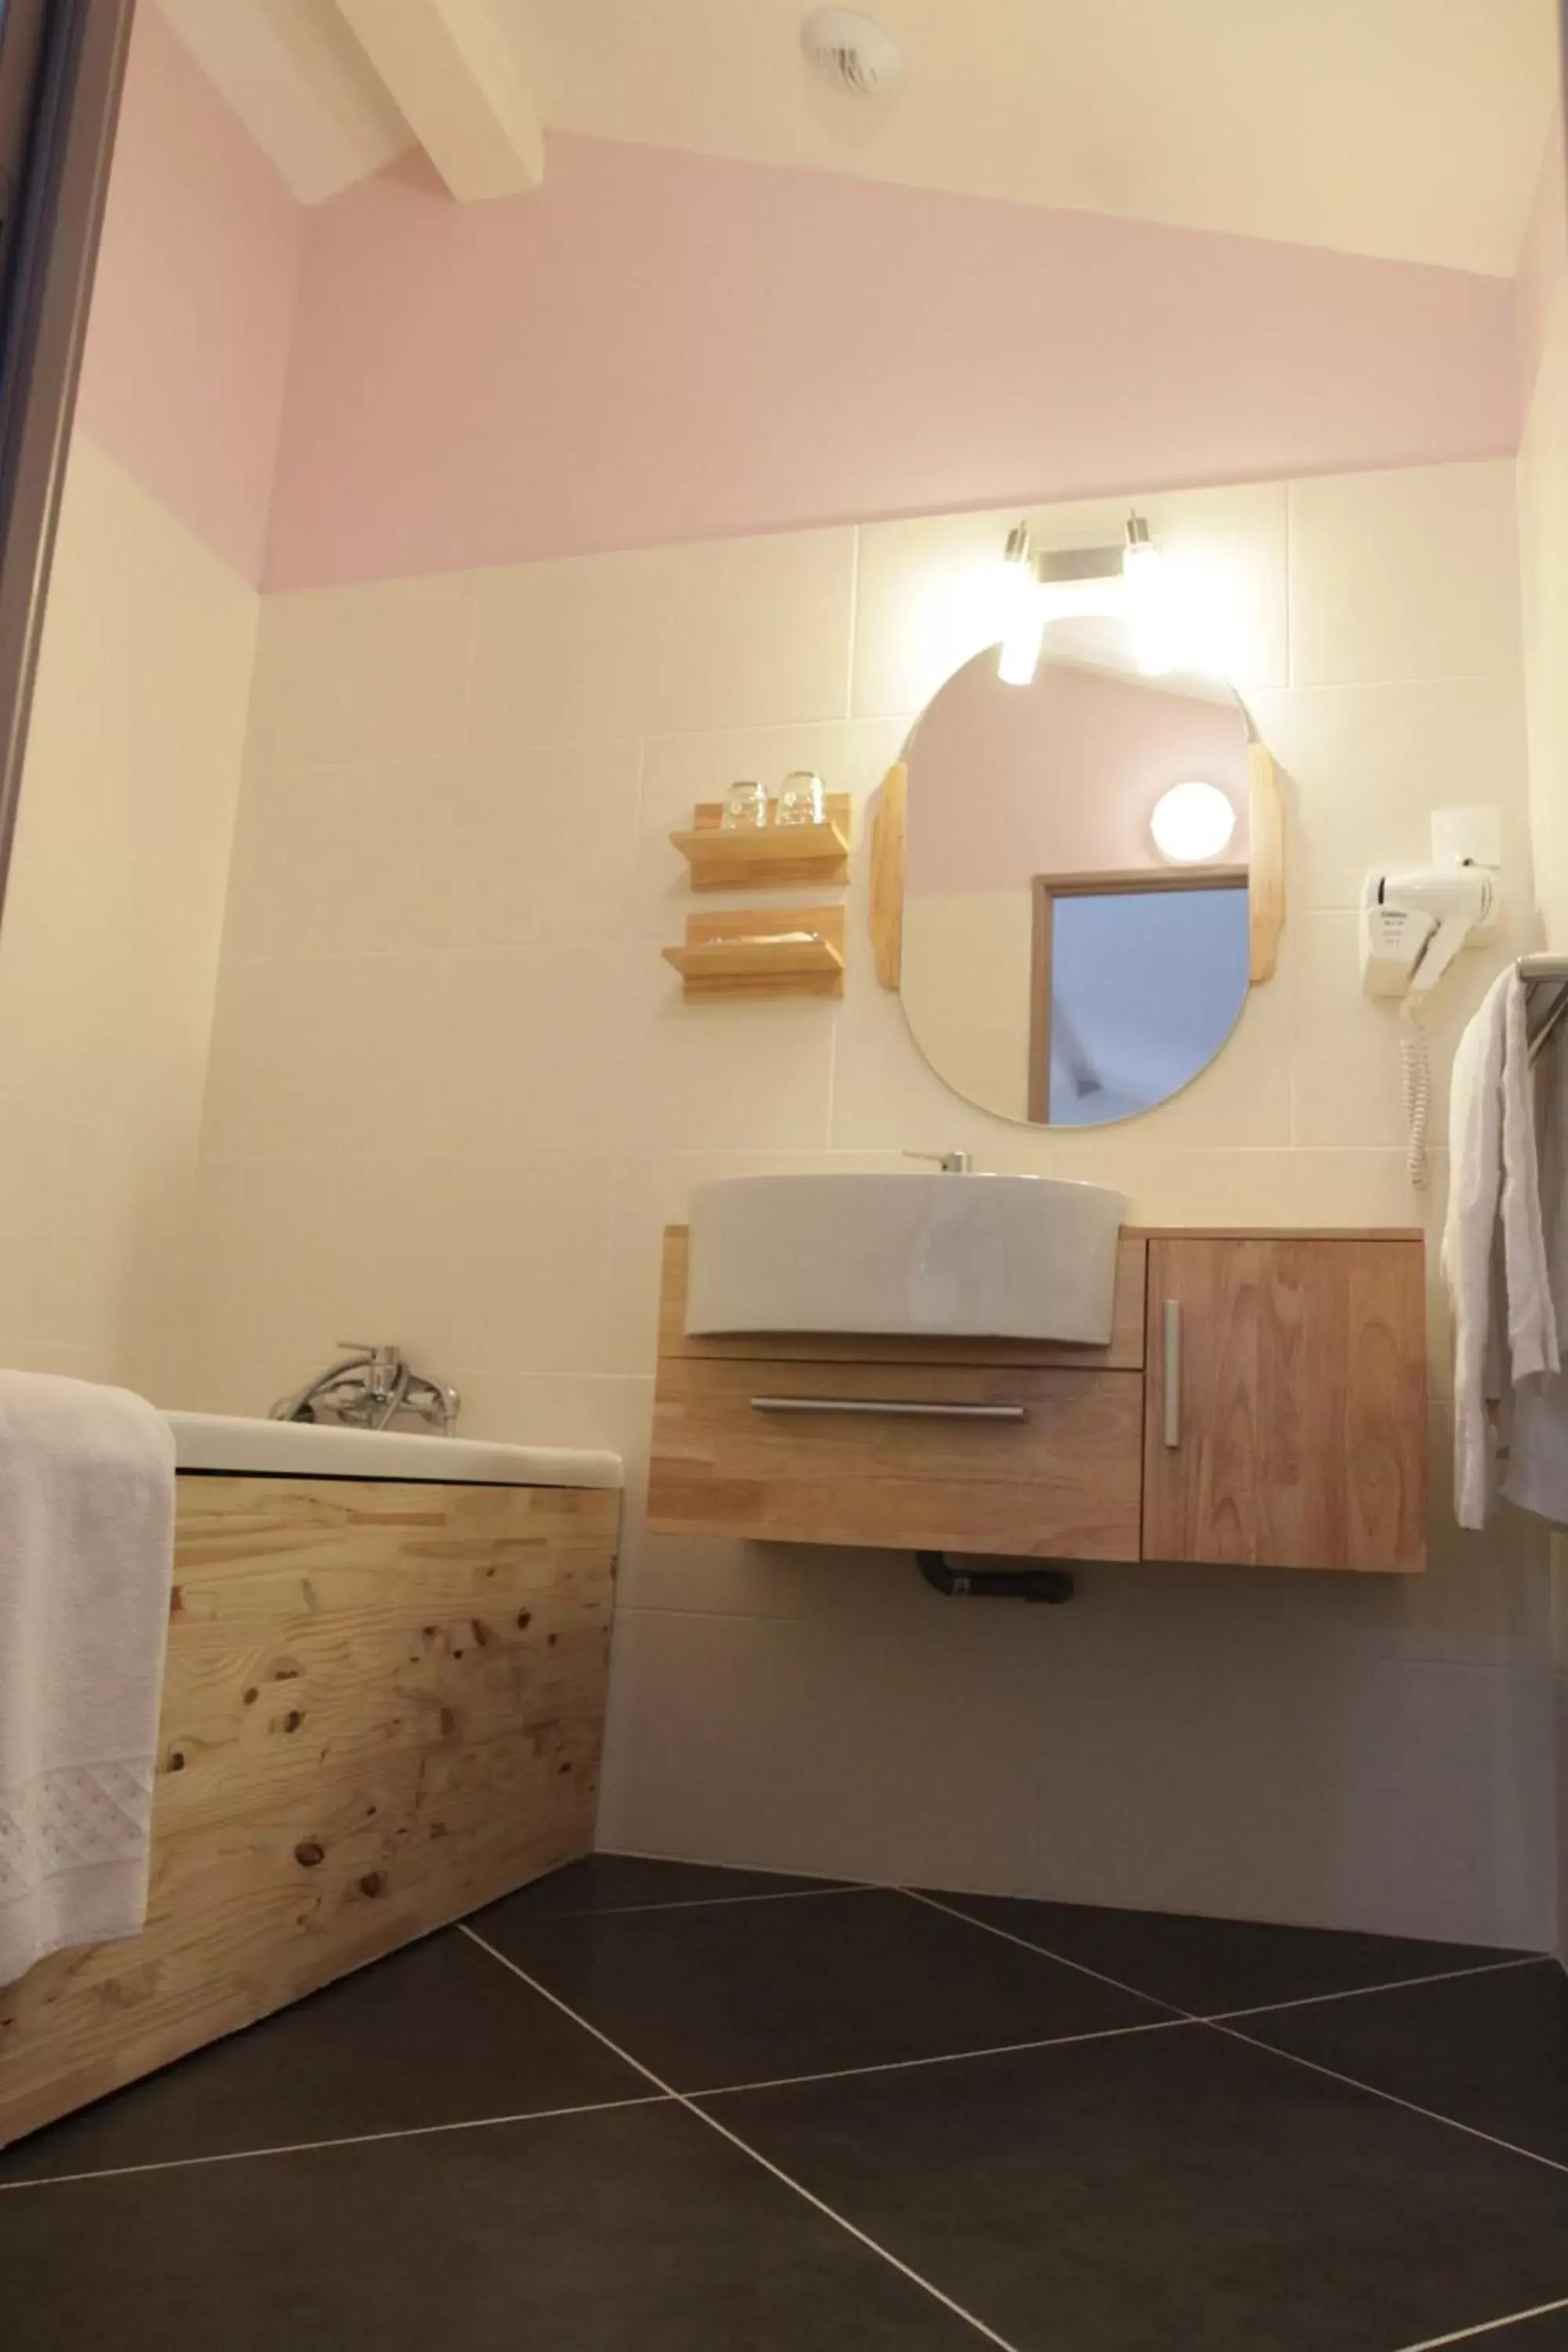 Bathroom in Urban Style, Hôtel Le Cheval Noir, Saint-Étienne